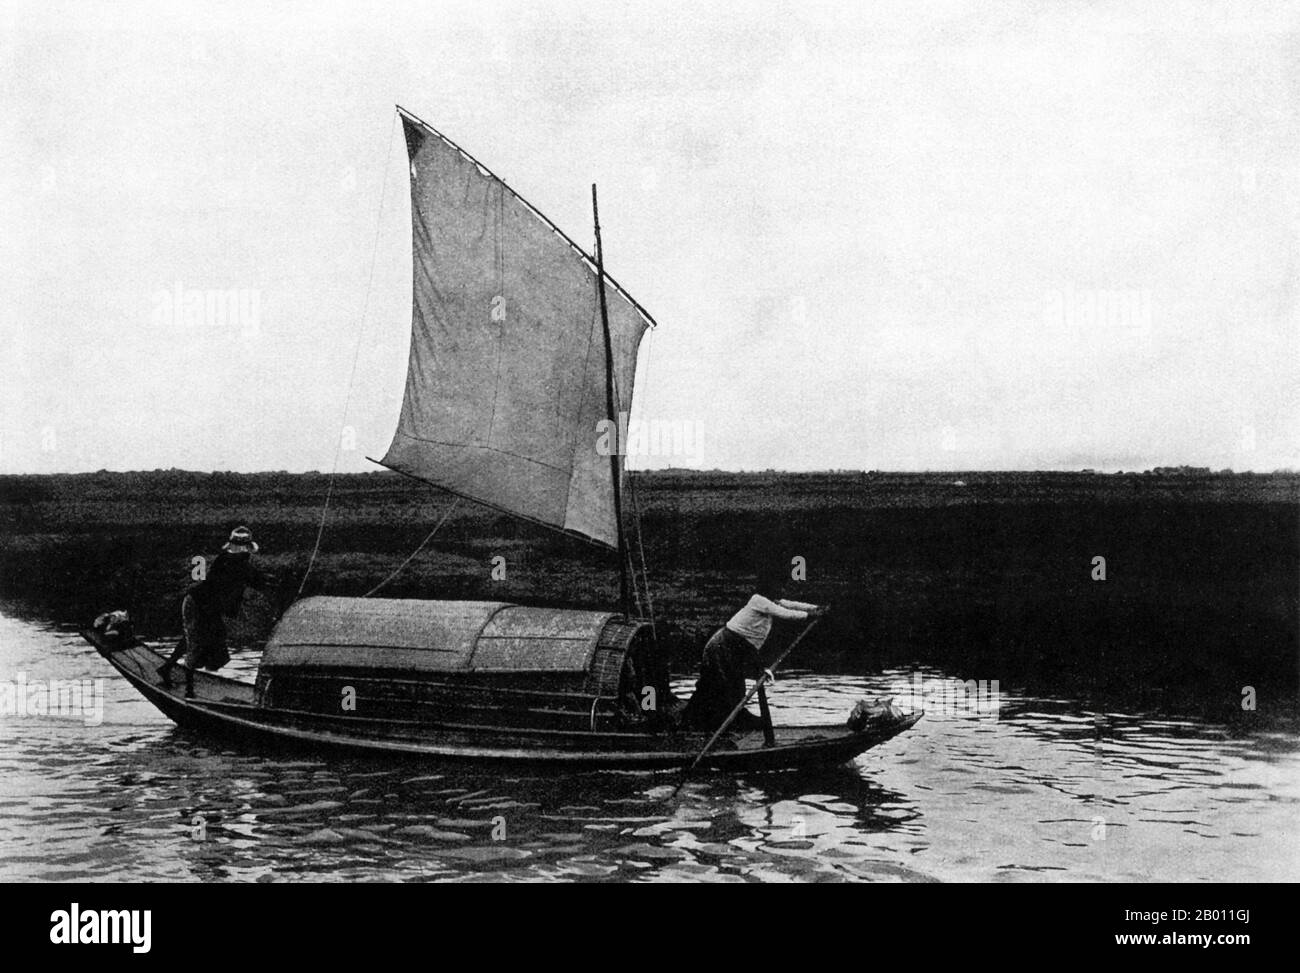 Thaïlande: Une péniche navigue sur un canal dans la plaine de la rivière Chao Phraya, c. 1900. Au tournant du XXe siècle, la grande majorité des Siamois étaient des riziculteurs qui vivaient et travaillaient le long des cours d'eau. Les pêcheurs aussi vivaient à proximité ou sur les rivières et les canaux. Chaque ménage avait un bateau, dont environ 600,000 navigué sur les canaux et les rivières de Bangkok. Pendant le règne du roi Chulalongkorn (1868—1910), de nombreux projets d'irrigation ont été commandés, dont le premier était le canal Rangsit en 1890. Banque D'Images